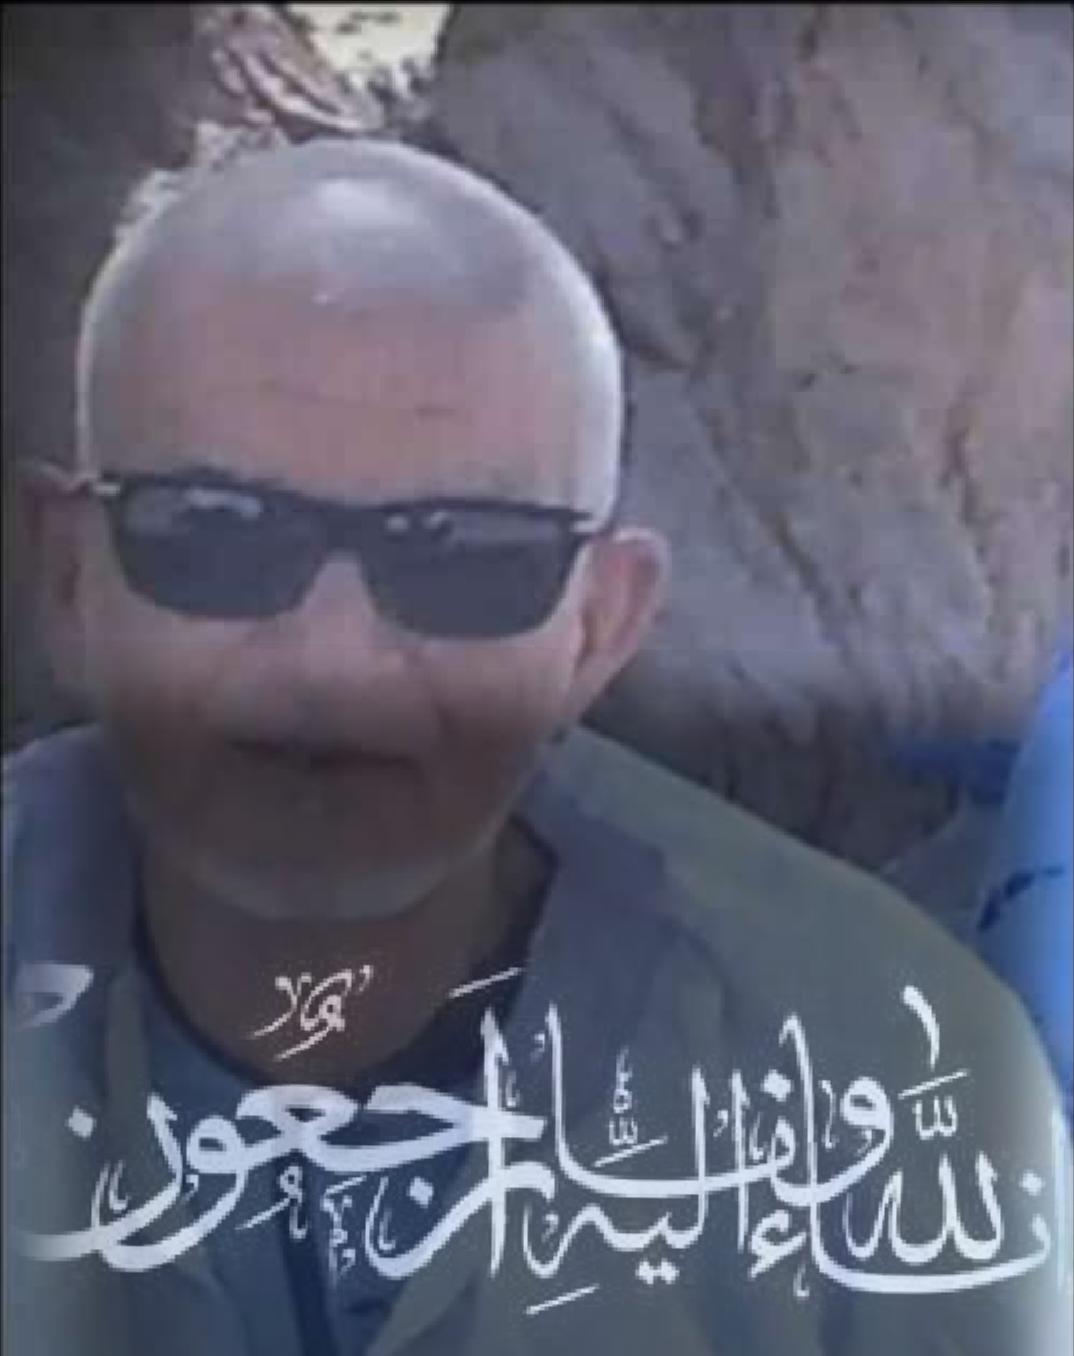 تعزية ومواساة في وفاة الأب الفاضل صالح ولد محمد مولود